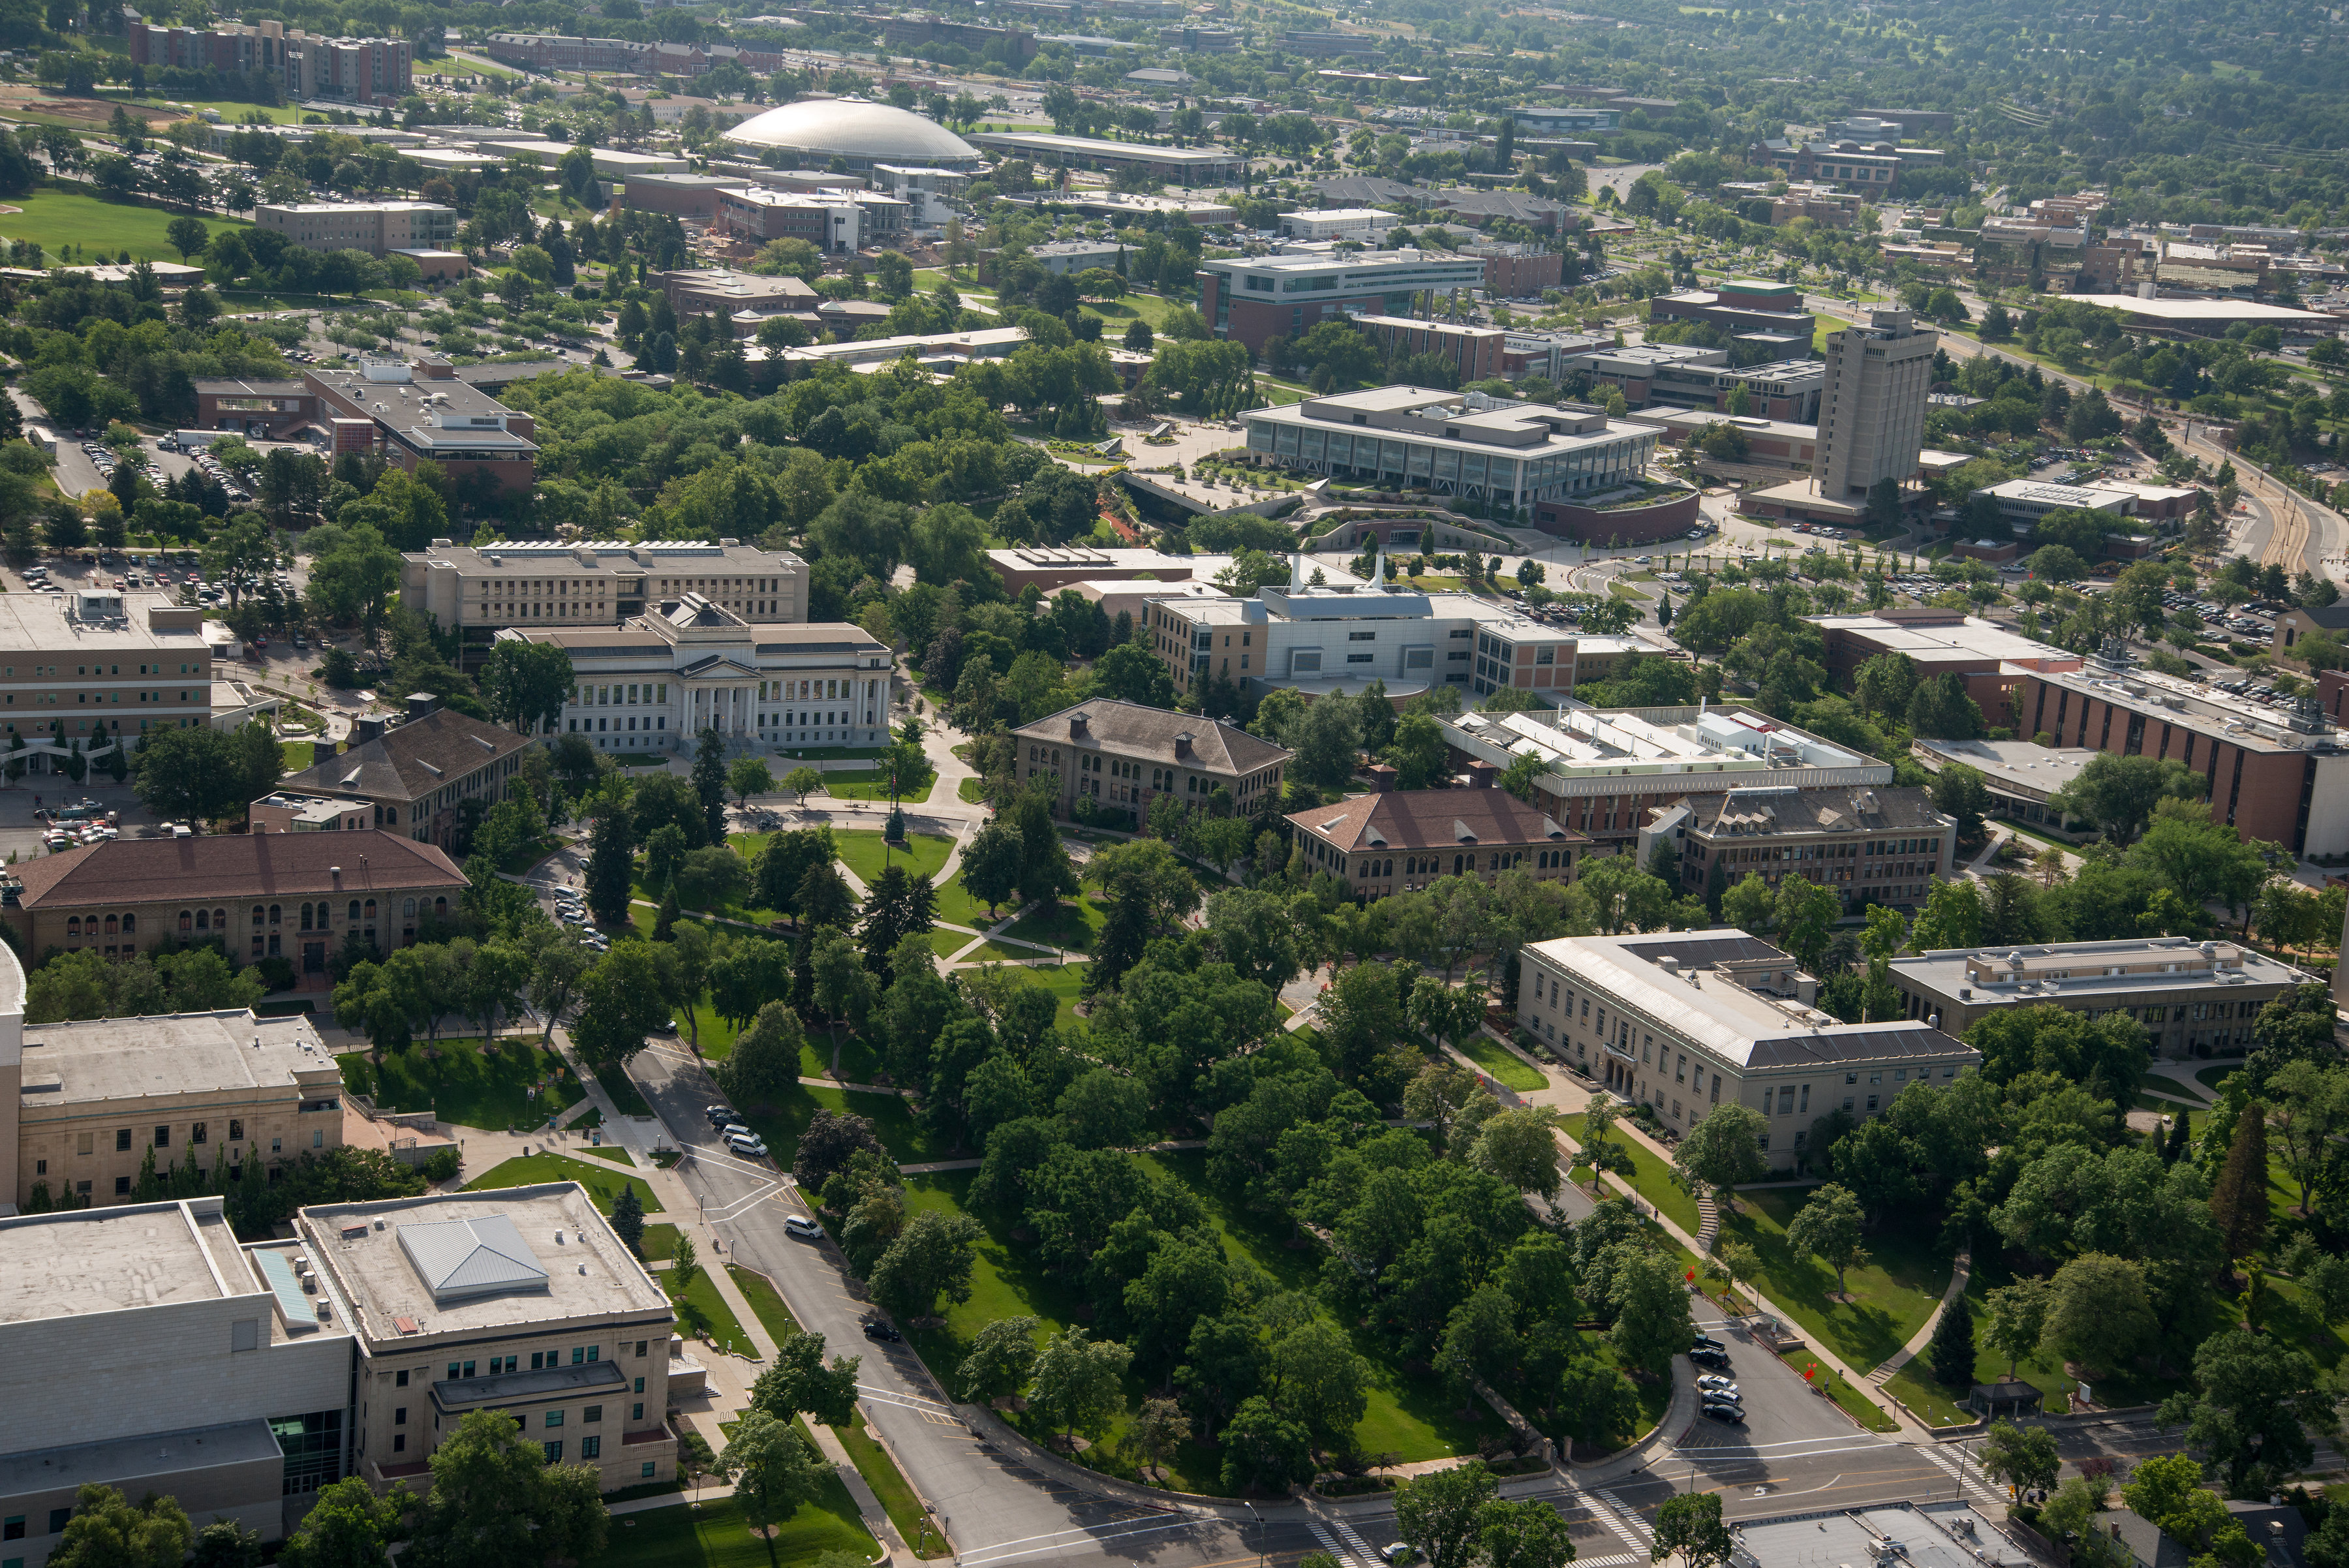 University of Utah Campus